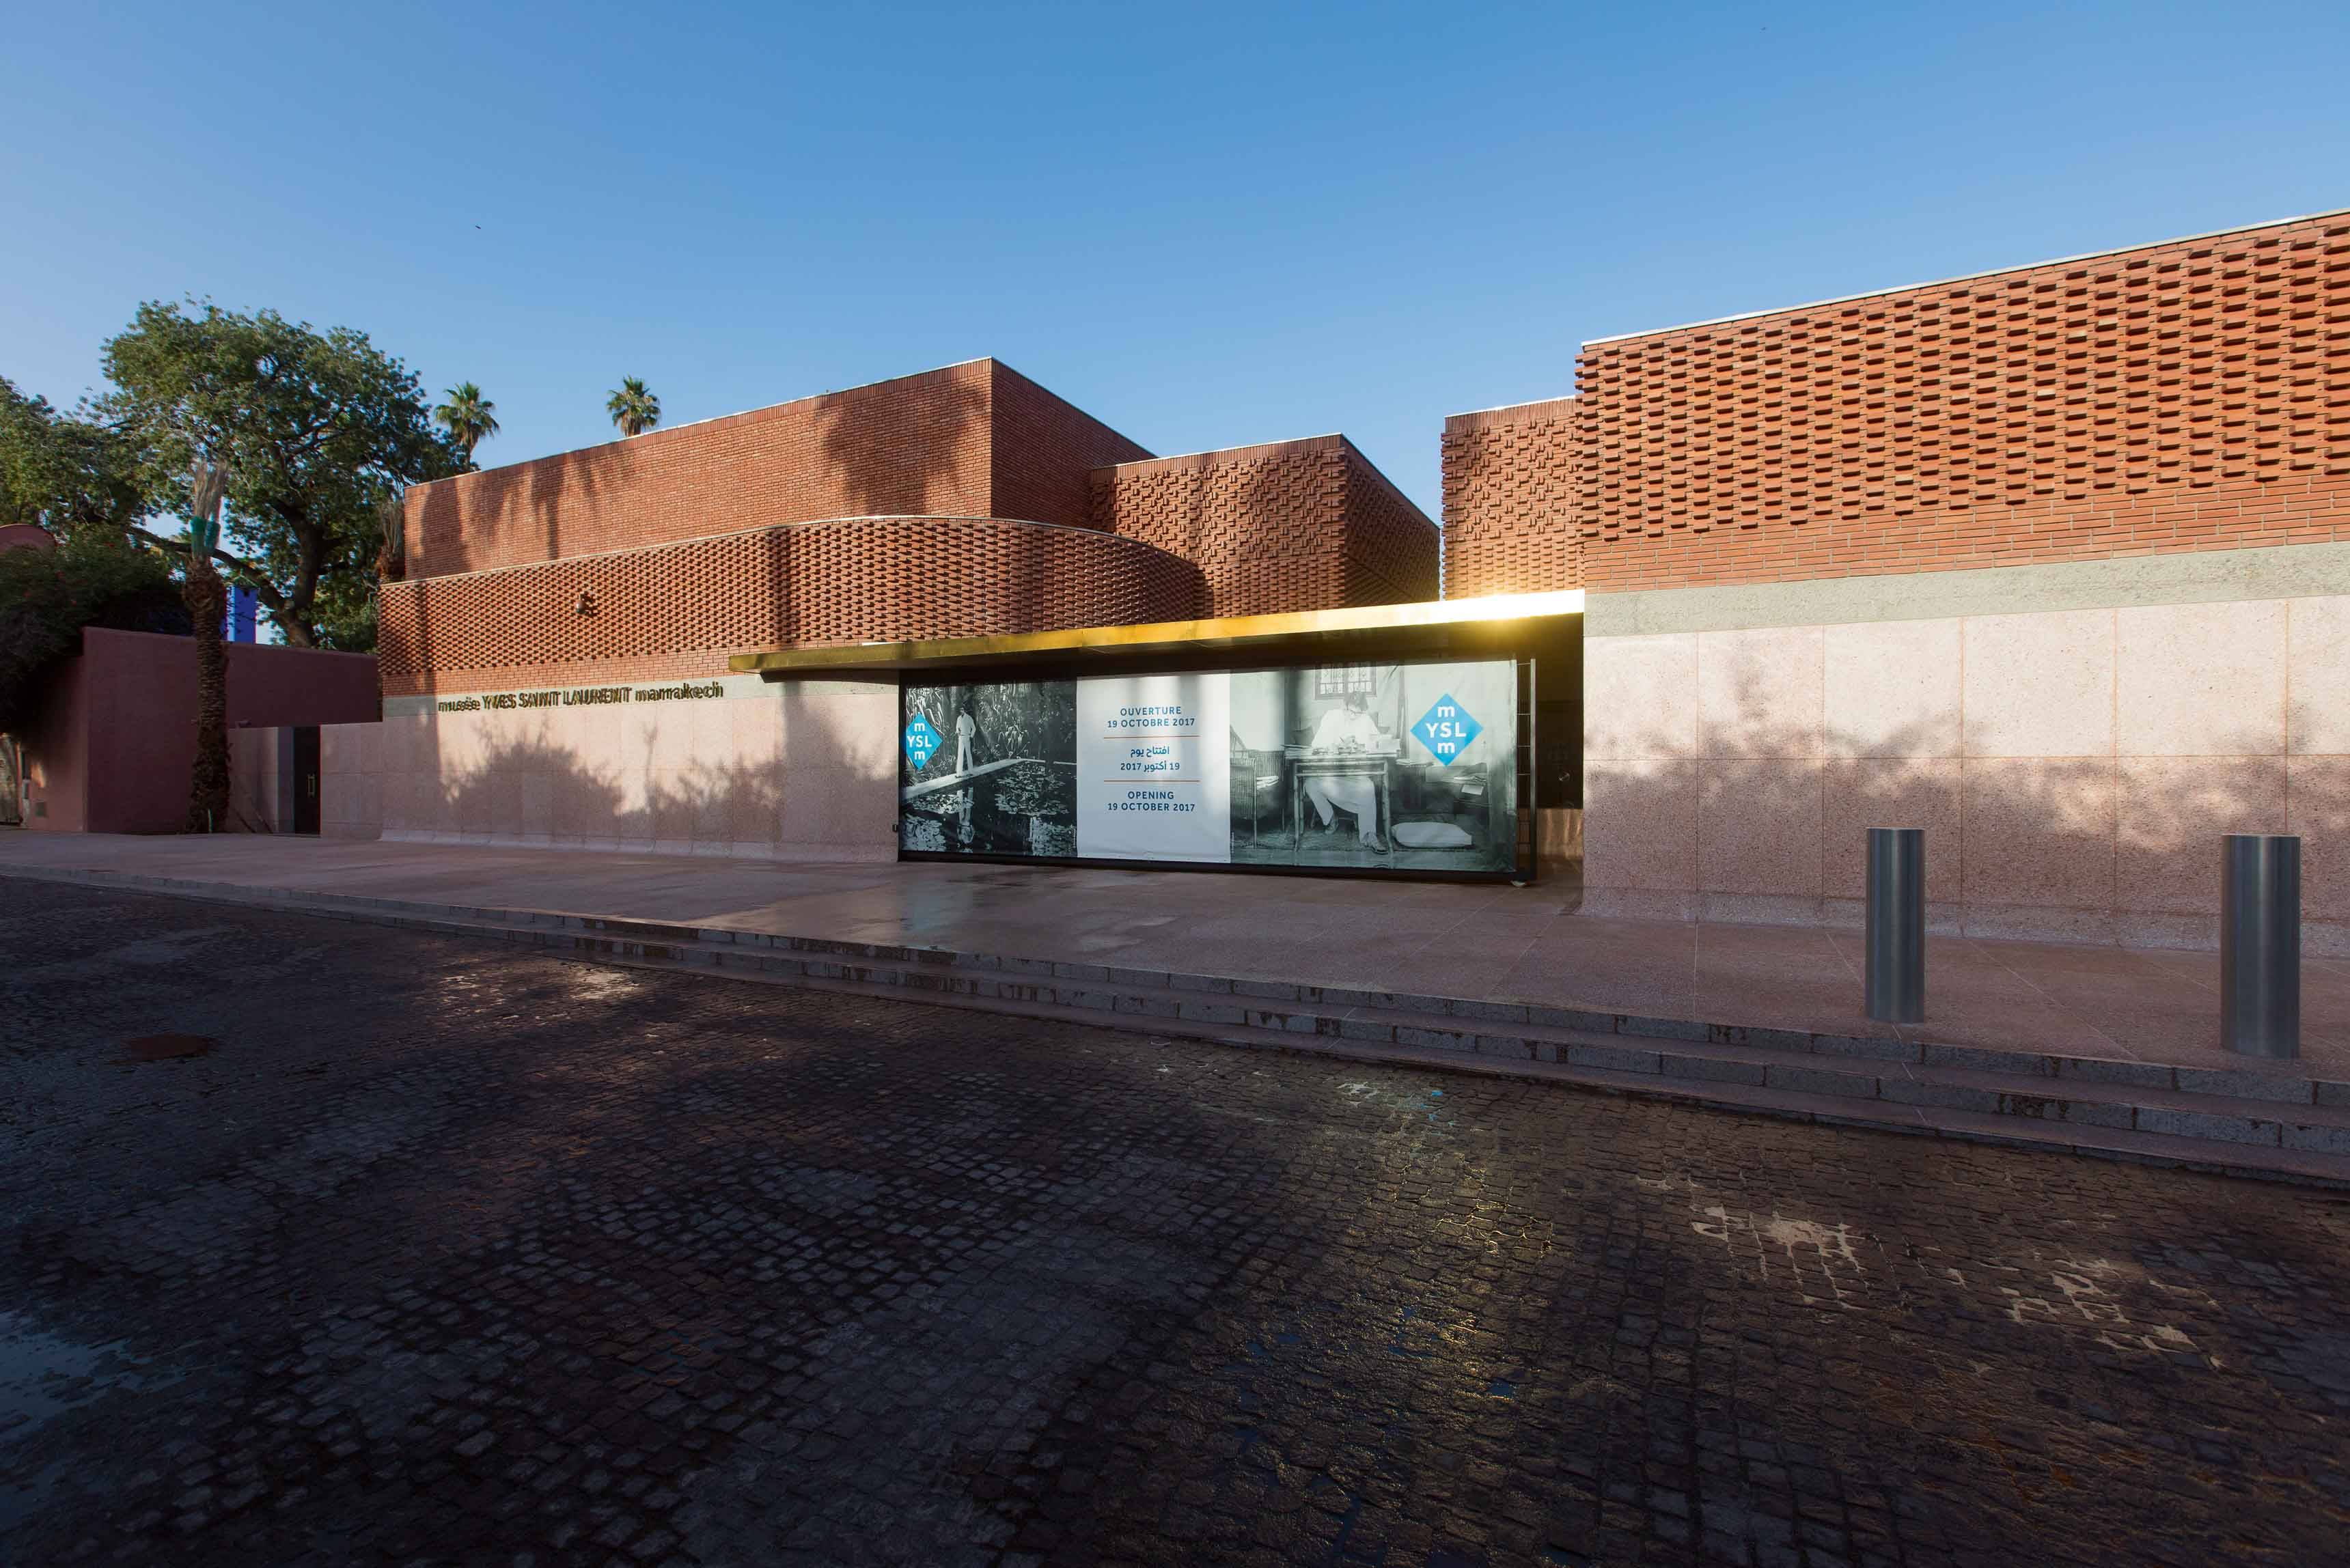 Qui sont les architectes derrière le palais Yves Saint Laurent à Marrakech ?